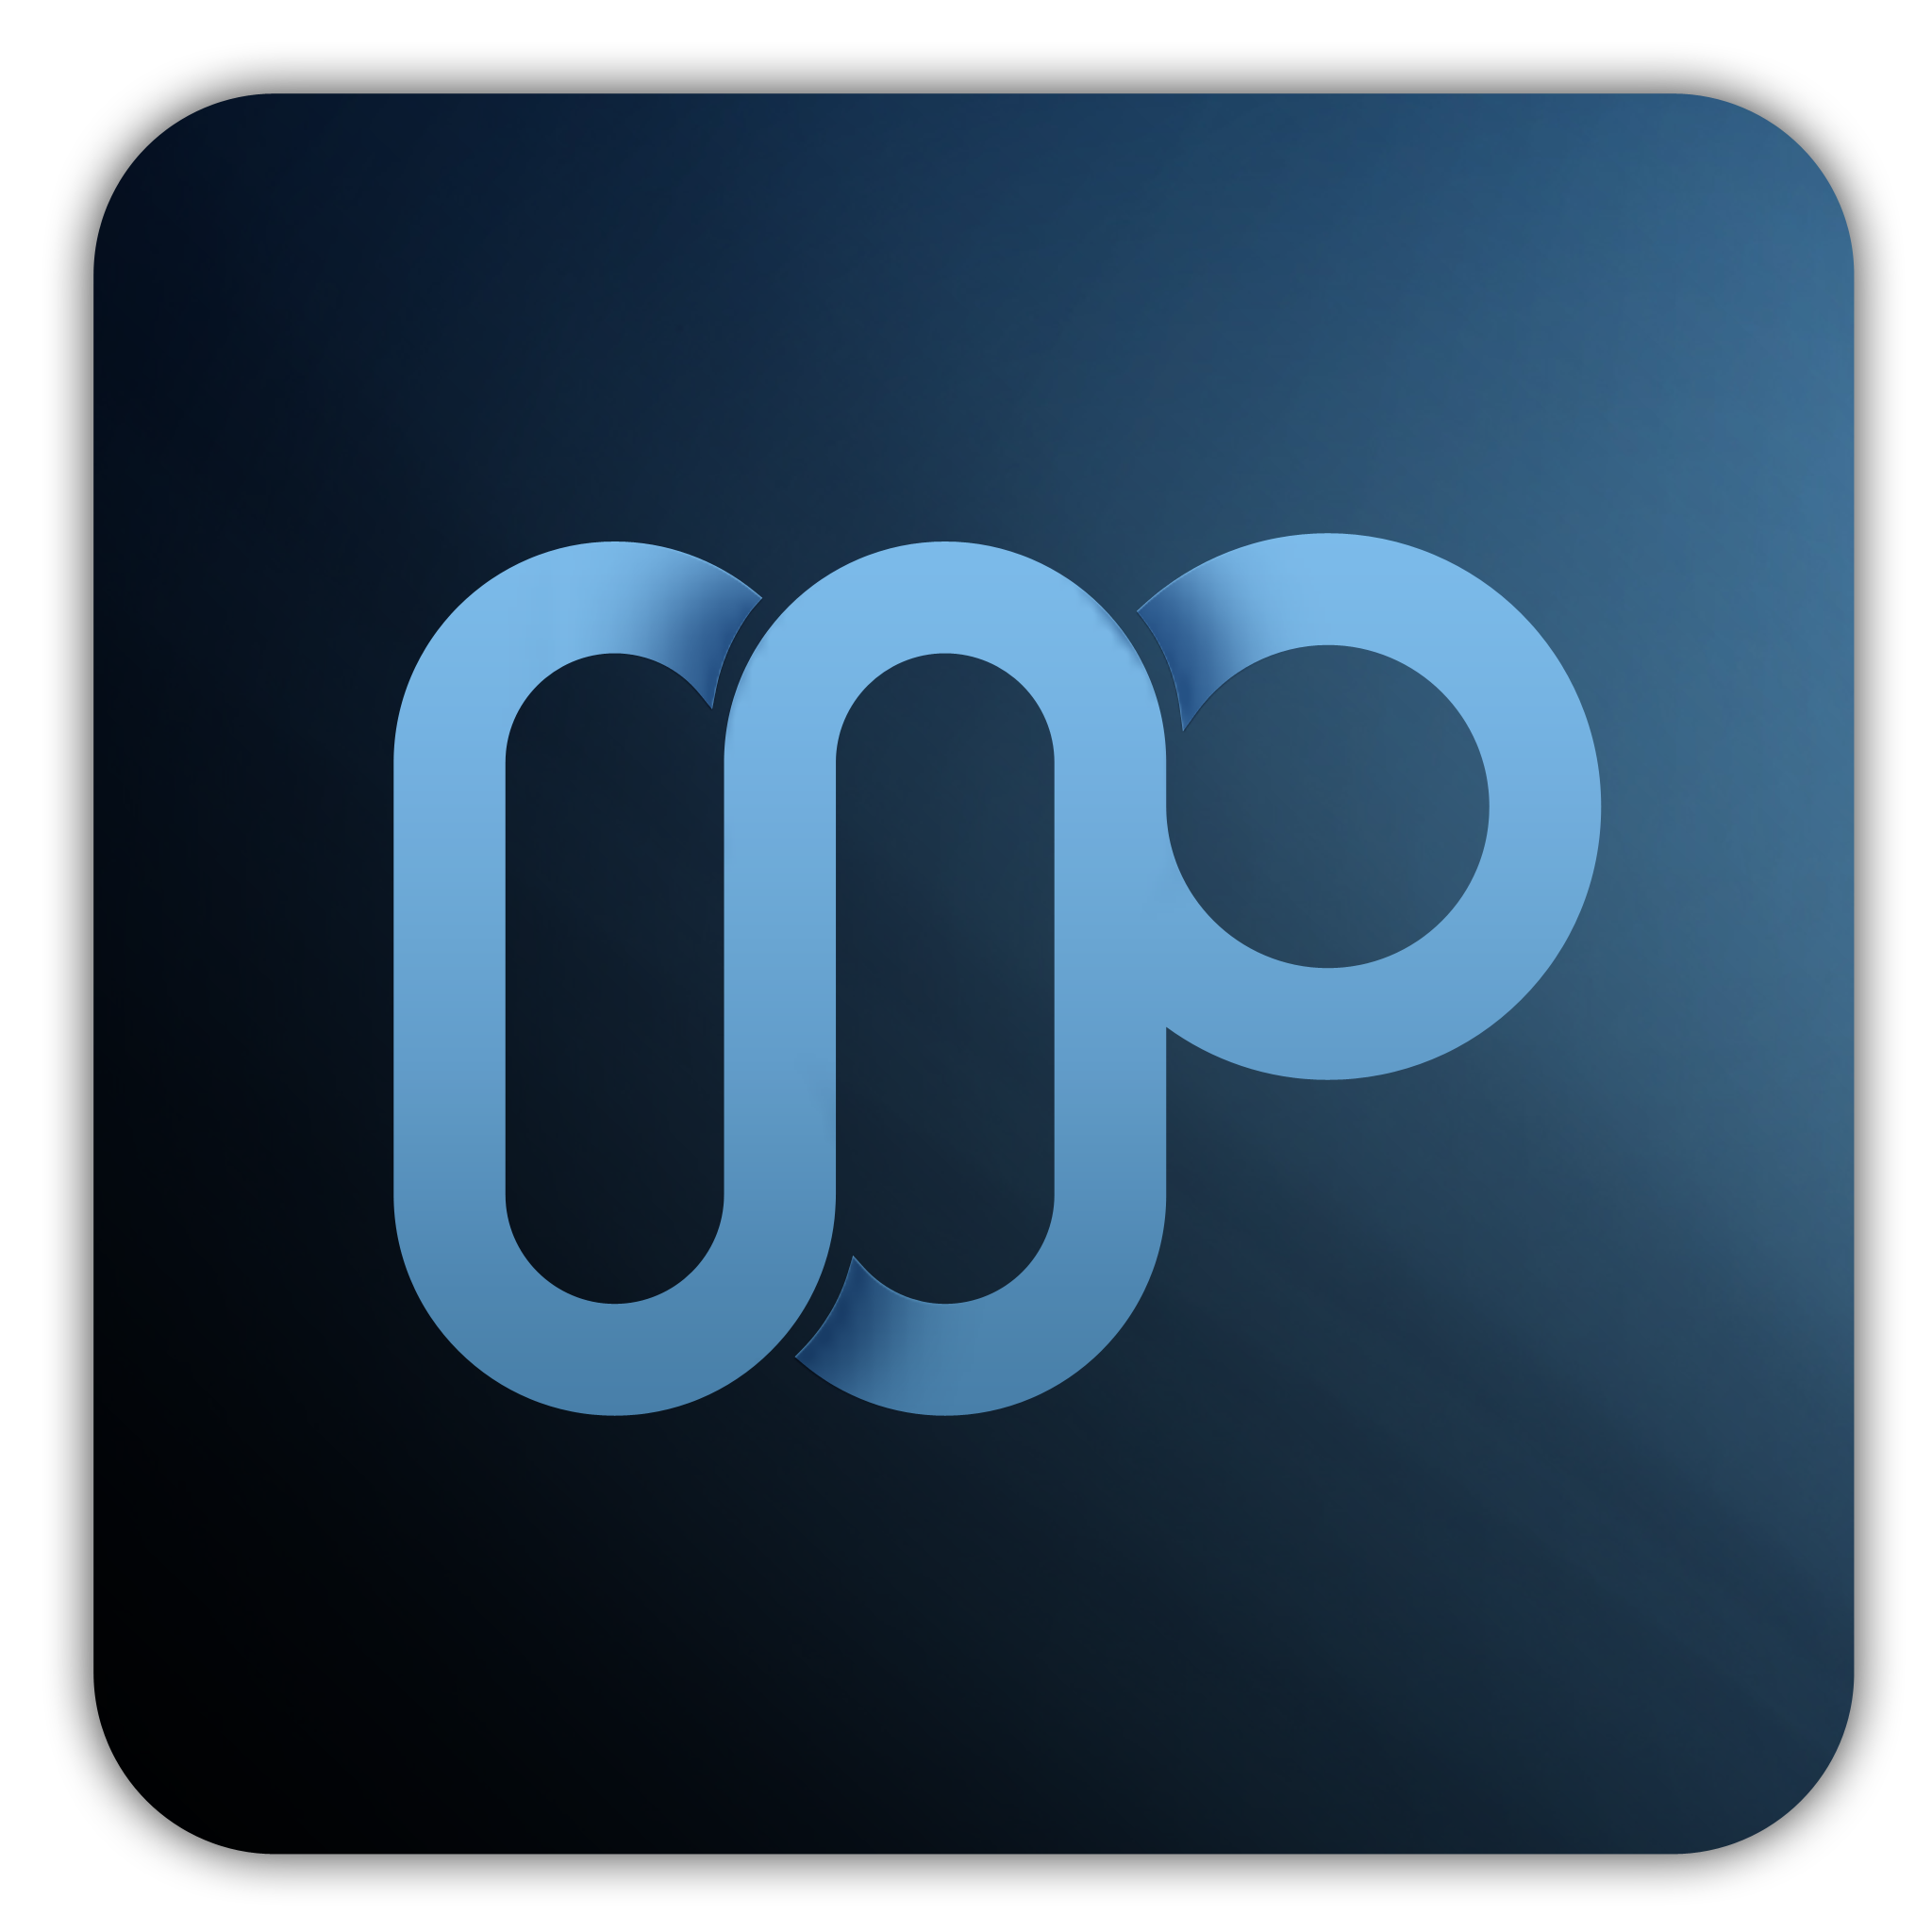 MediaPortal 1.5.0 FINAL Released - MEDIAPORTAL